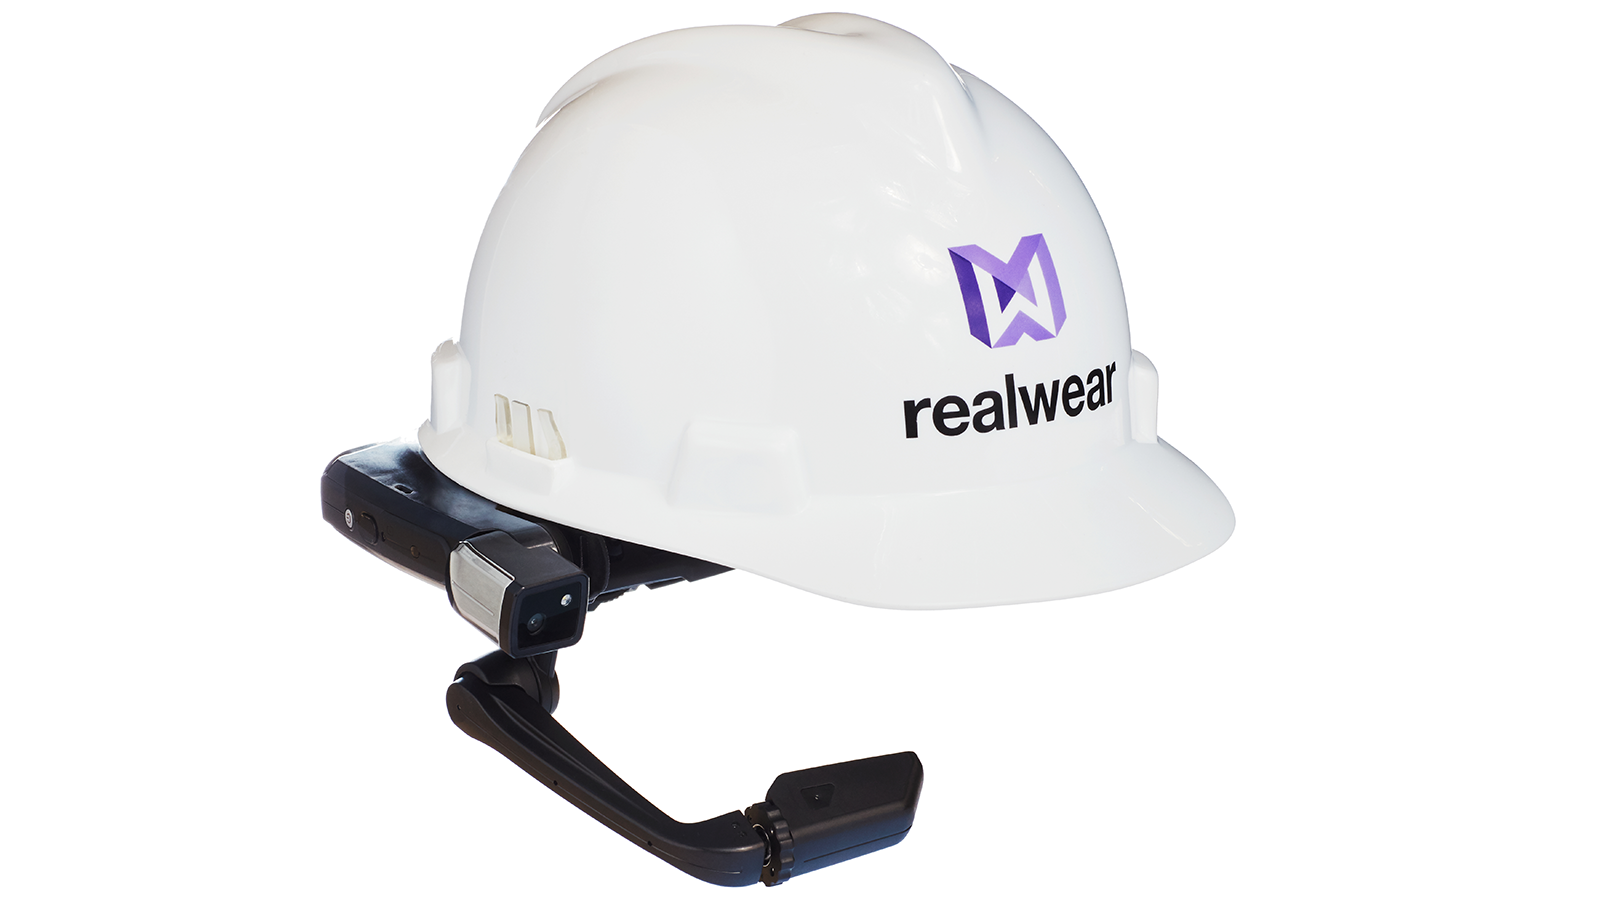 RealWear 頭盔圖片。